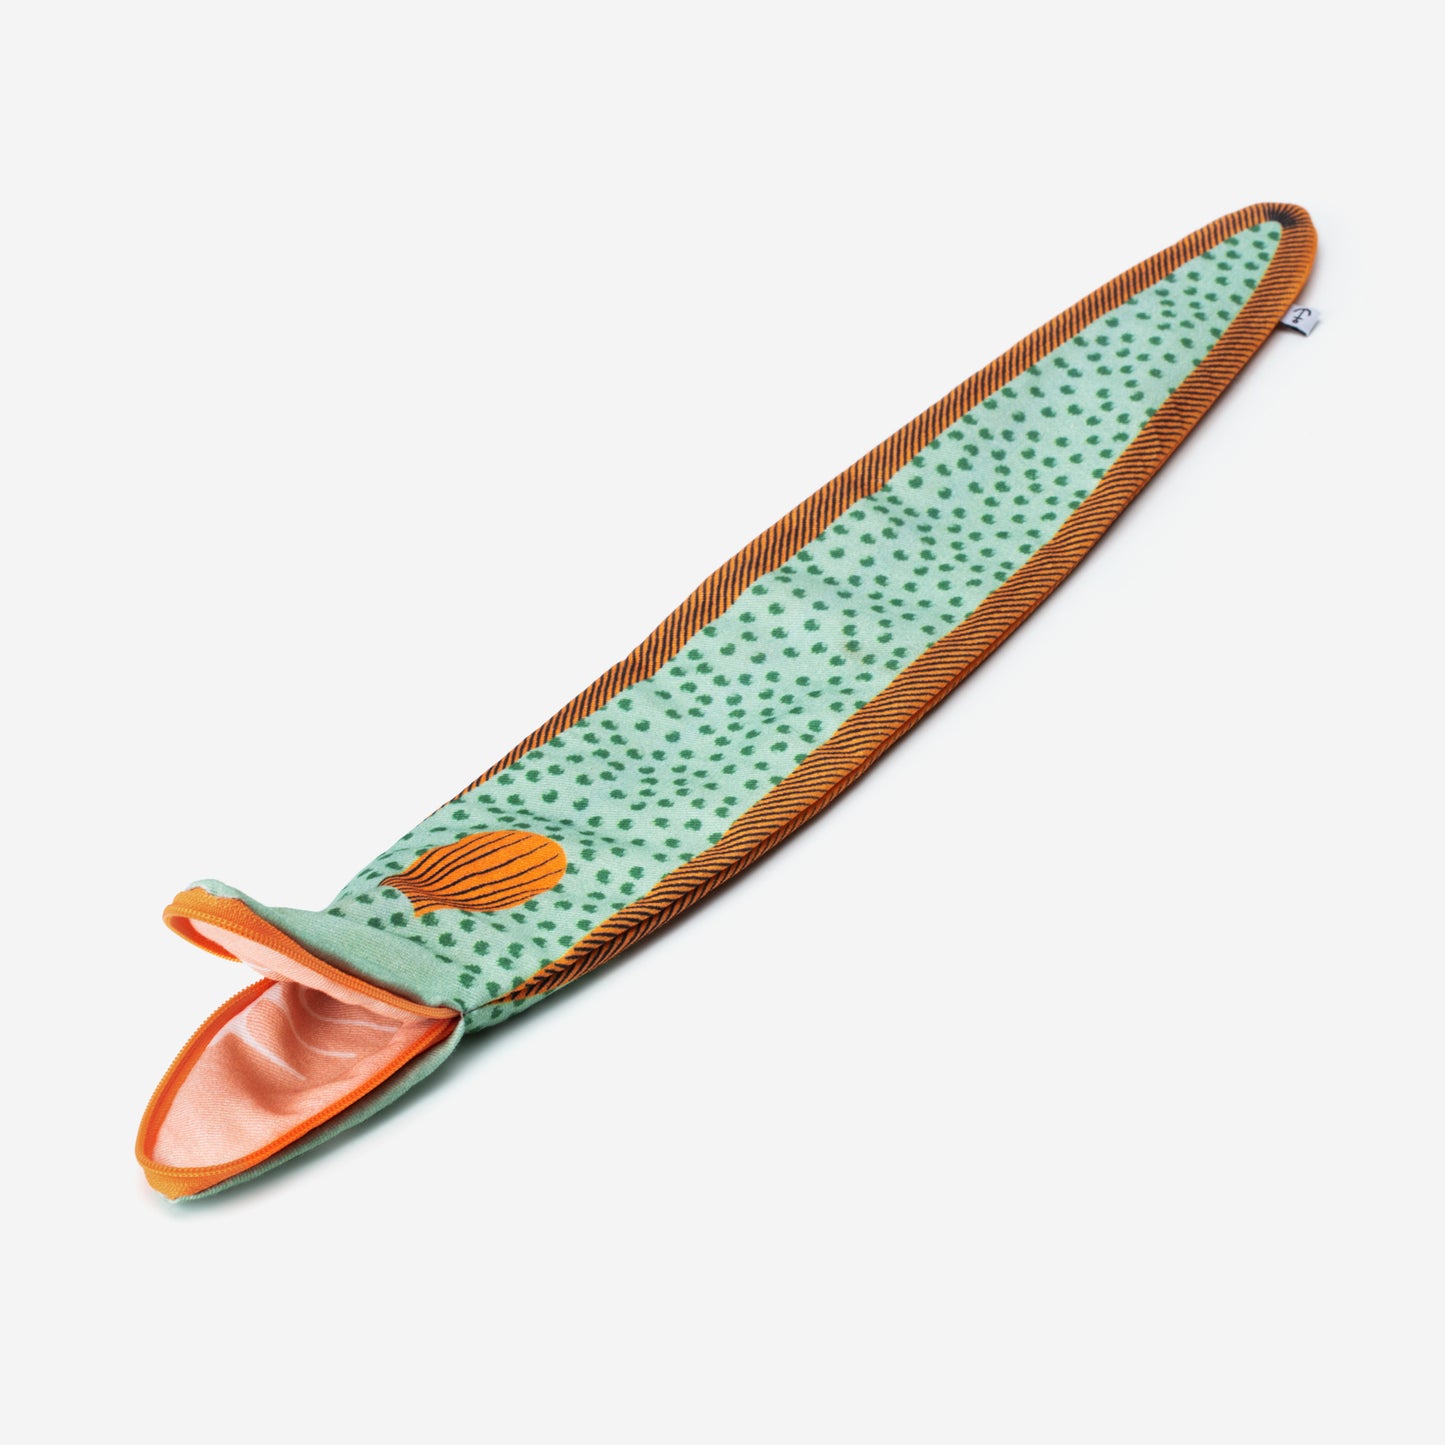 Eel - Knitting Needle Case